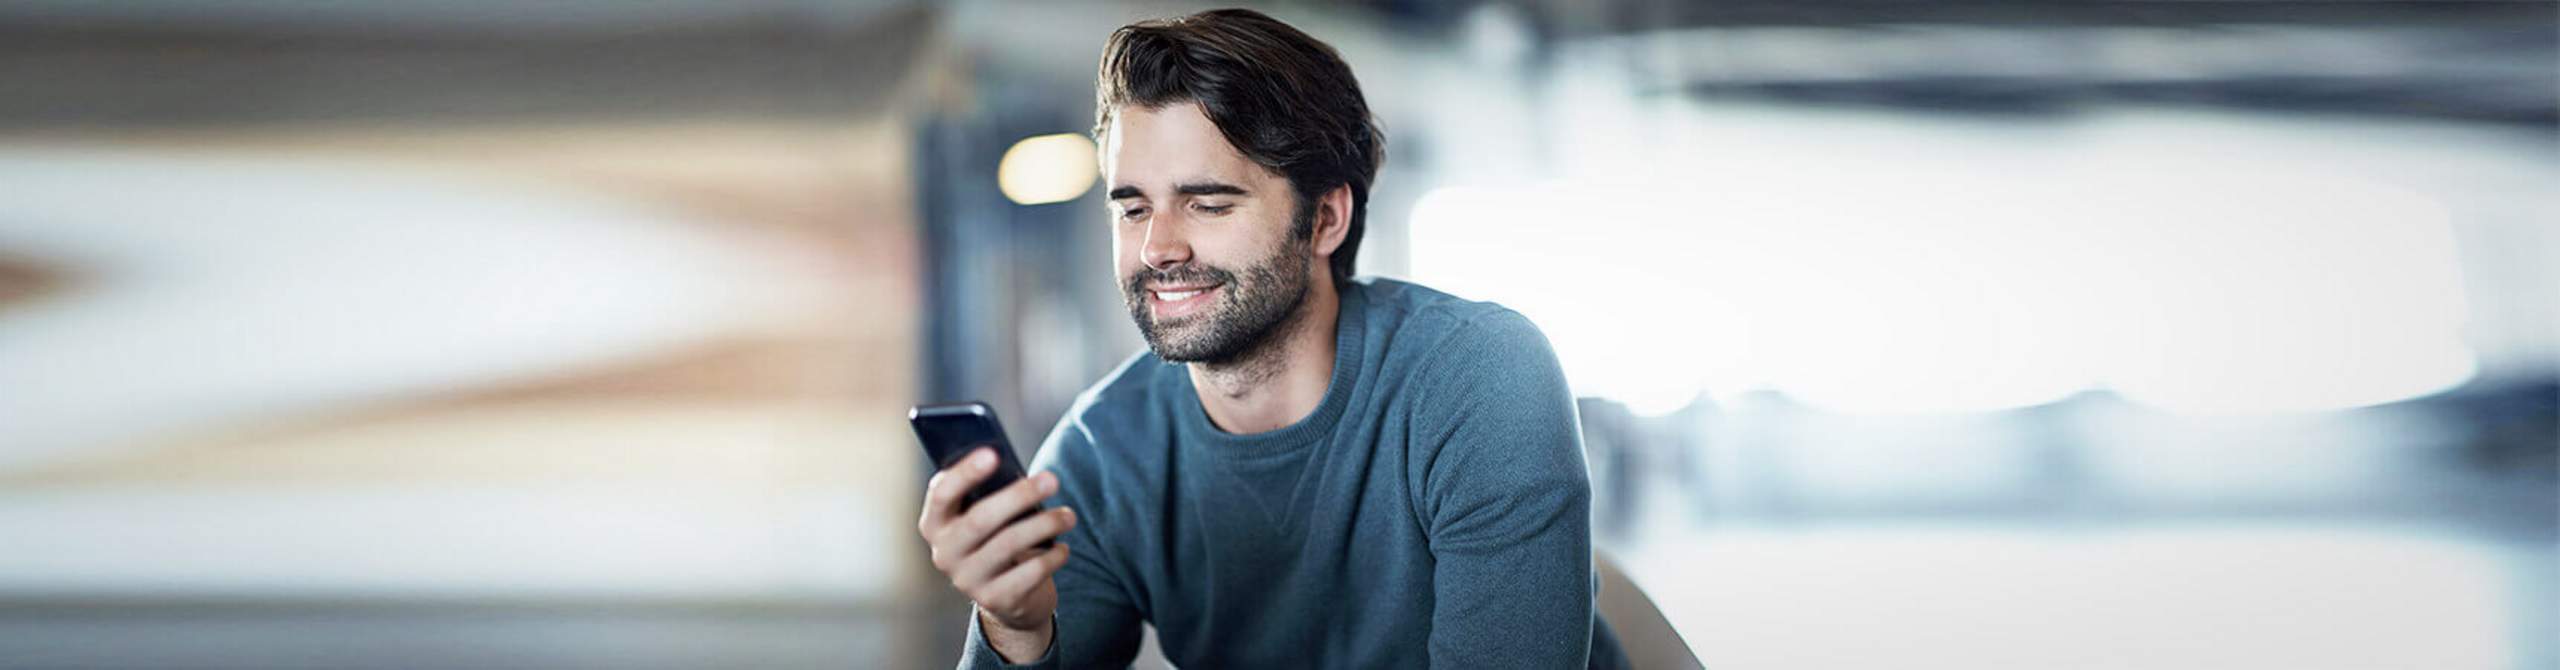 Ein Mann schaut lächelnd auf sein Smartphone.